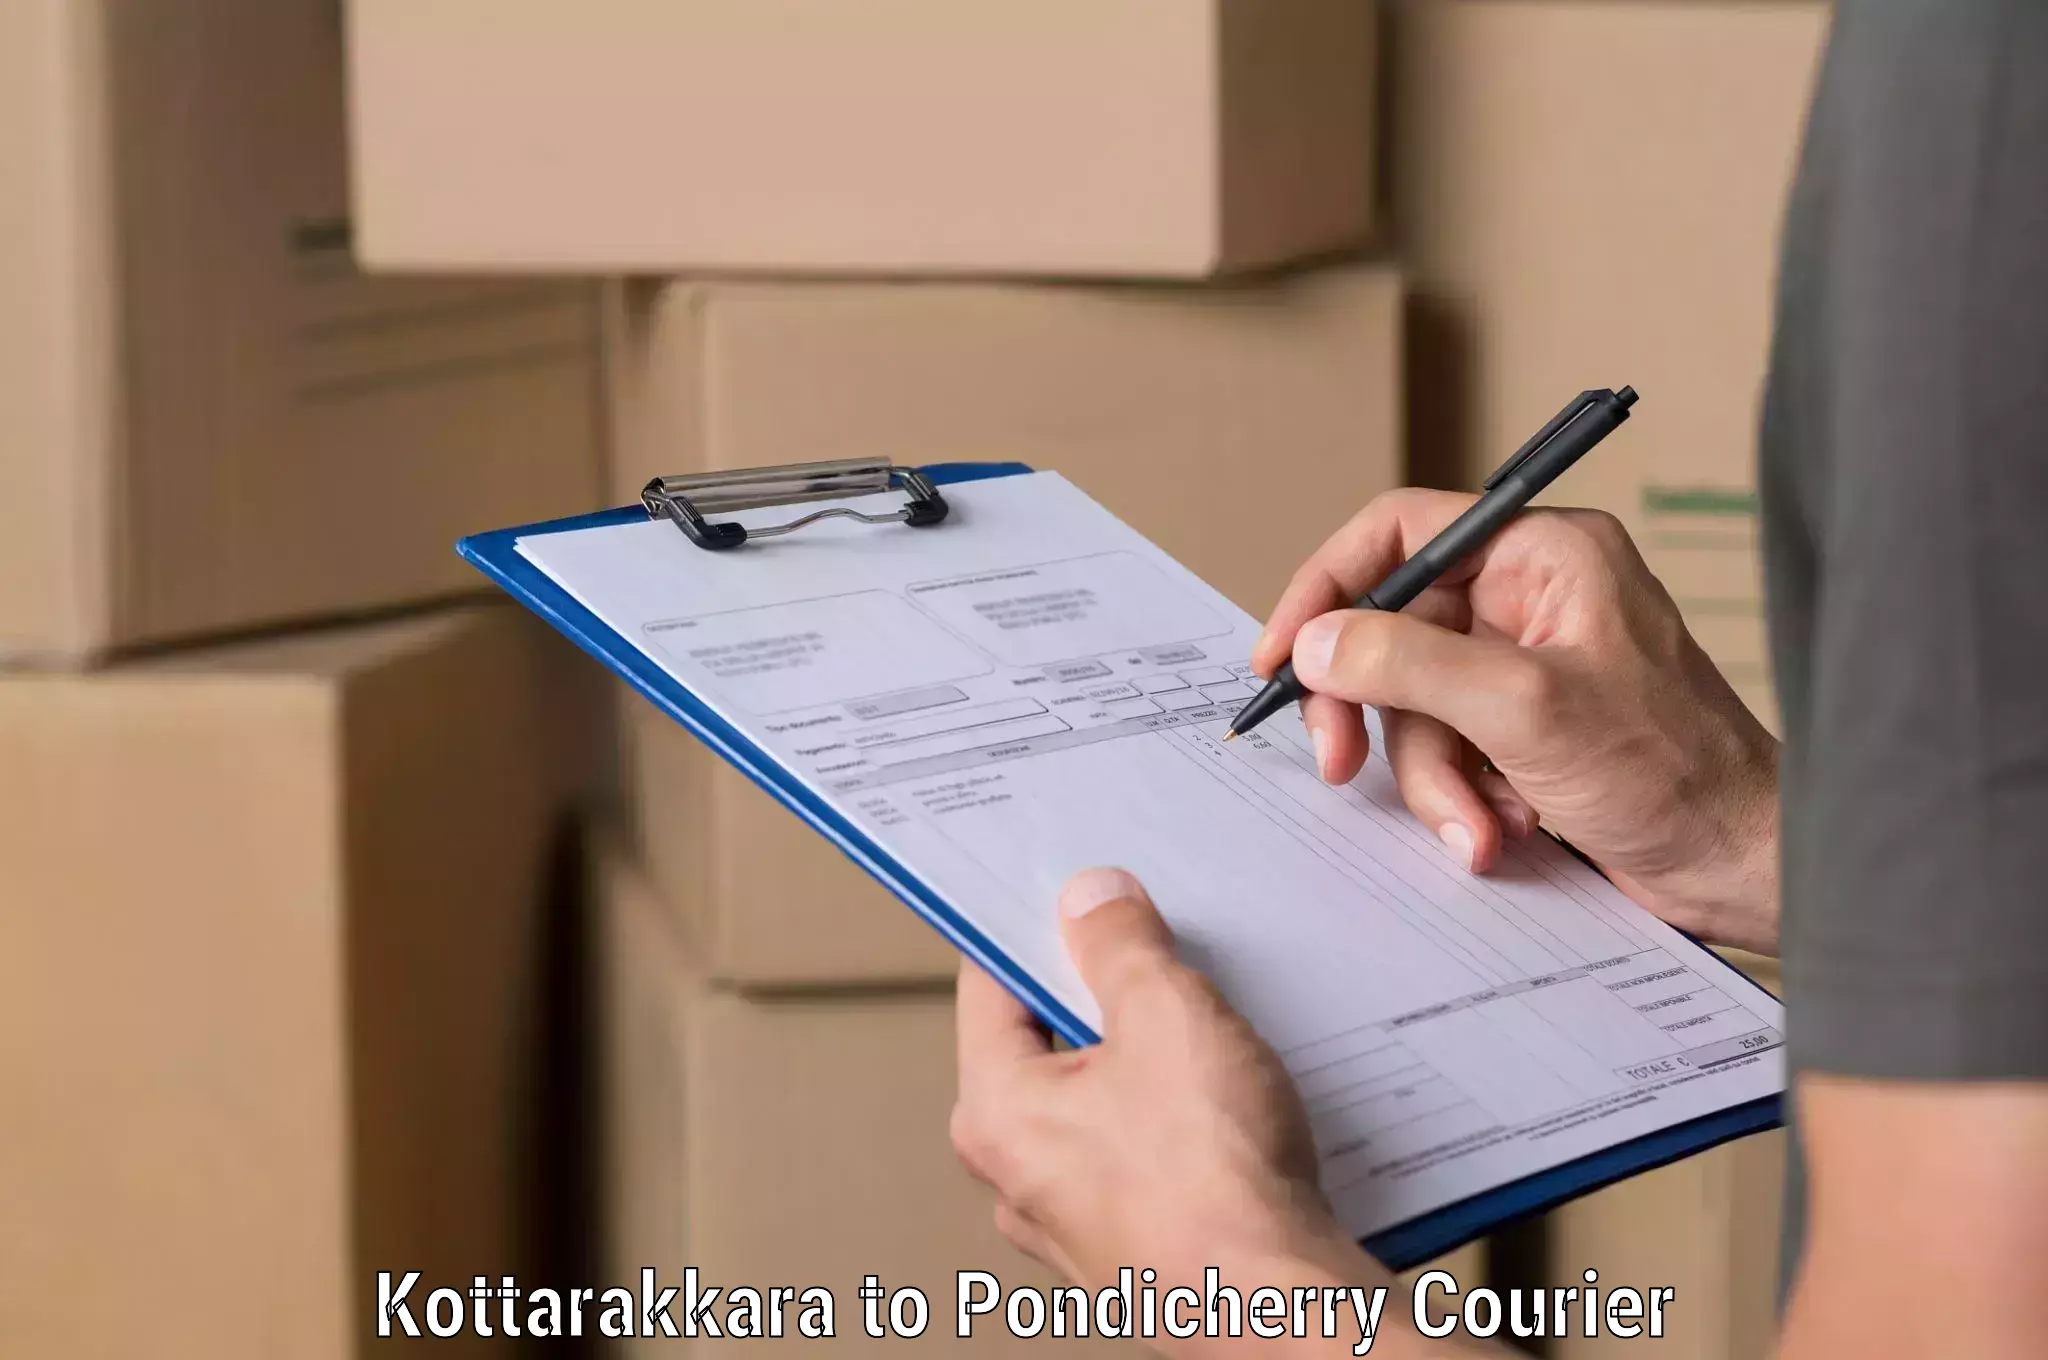 24/7 shipping services Kottarakkara to Metttupalayam